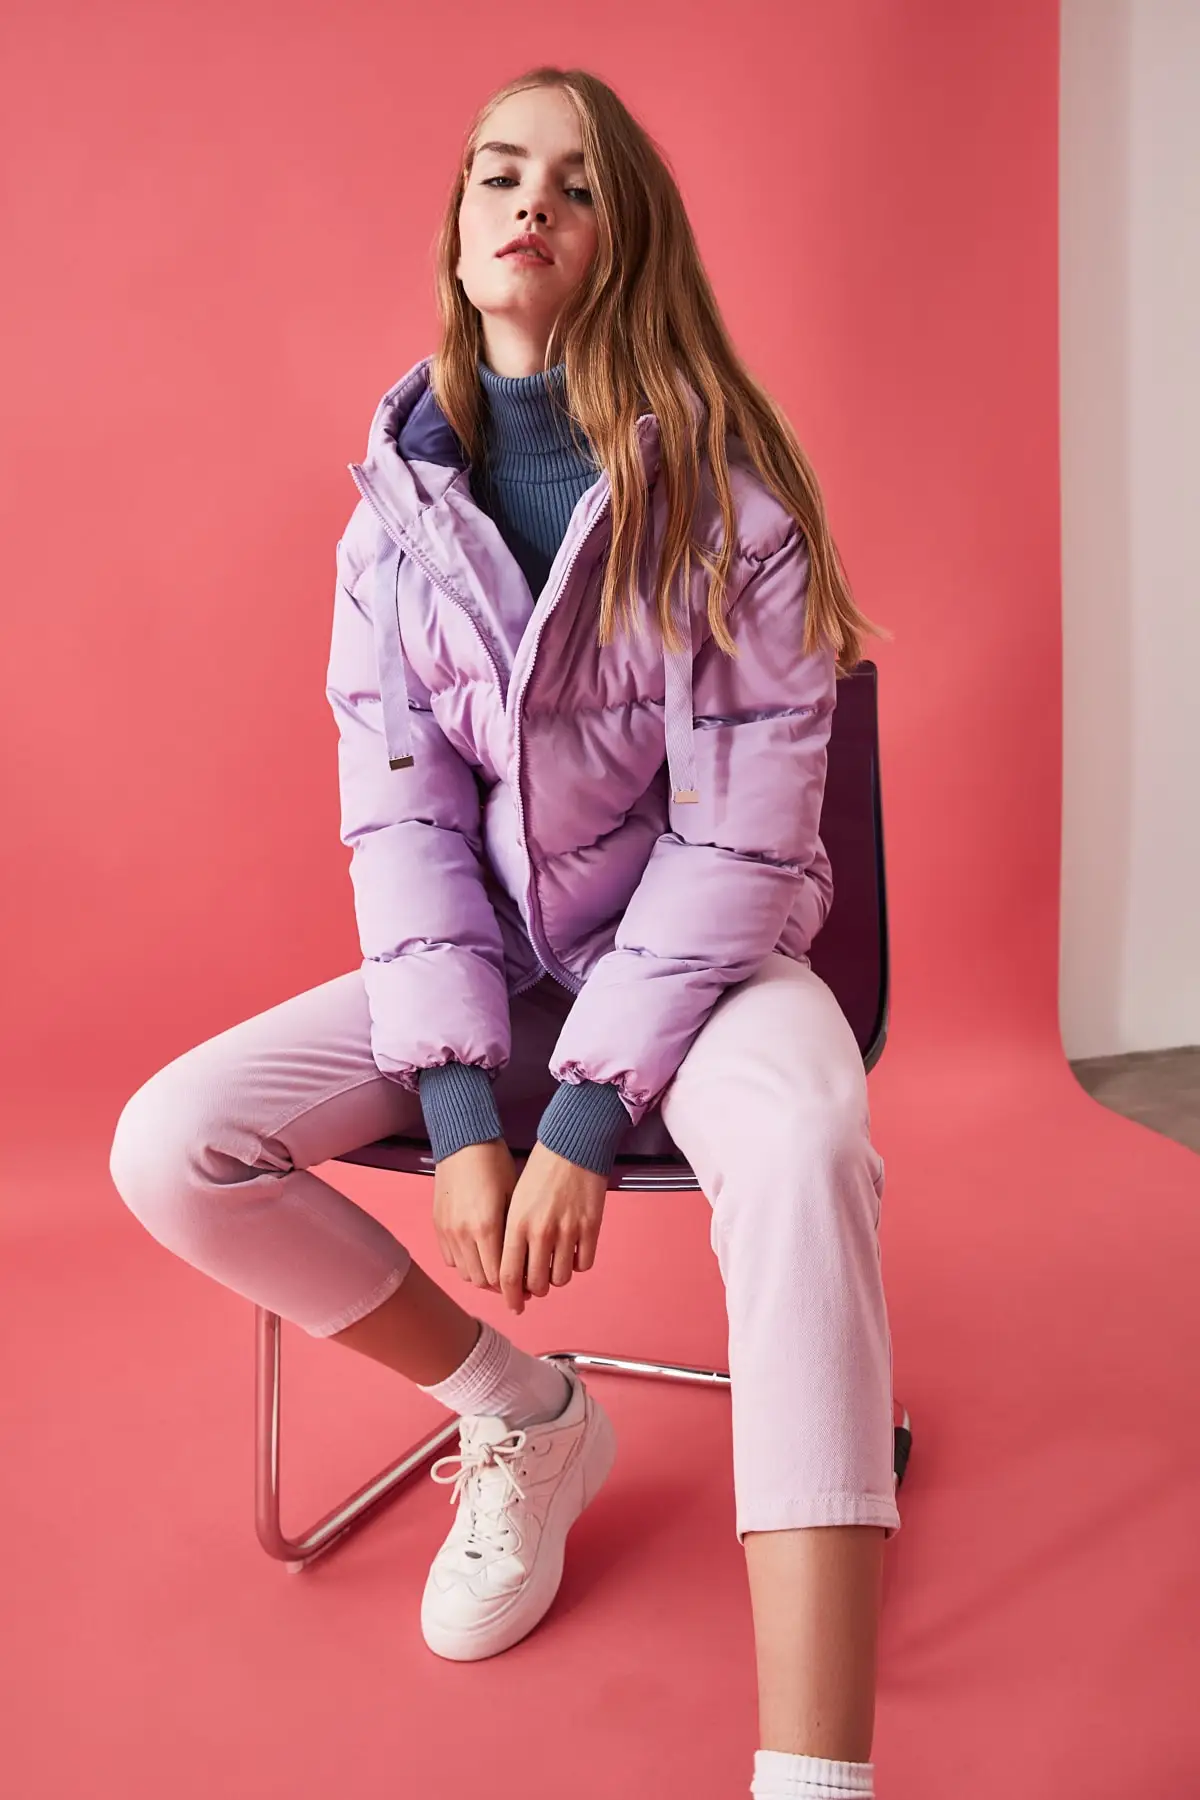 Manteau gonflable à capuche Lilac pour femmes, modèle Dimensions longueur 1.77 buste: 82, taille: 59, hanche: 88